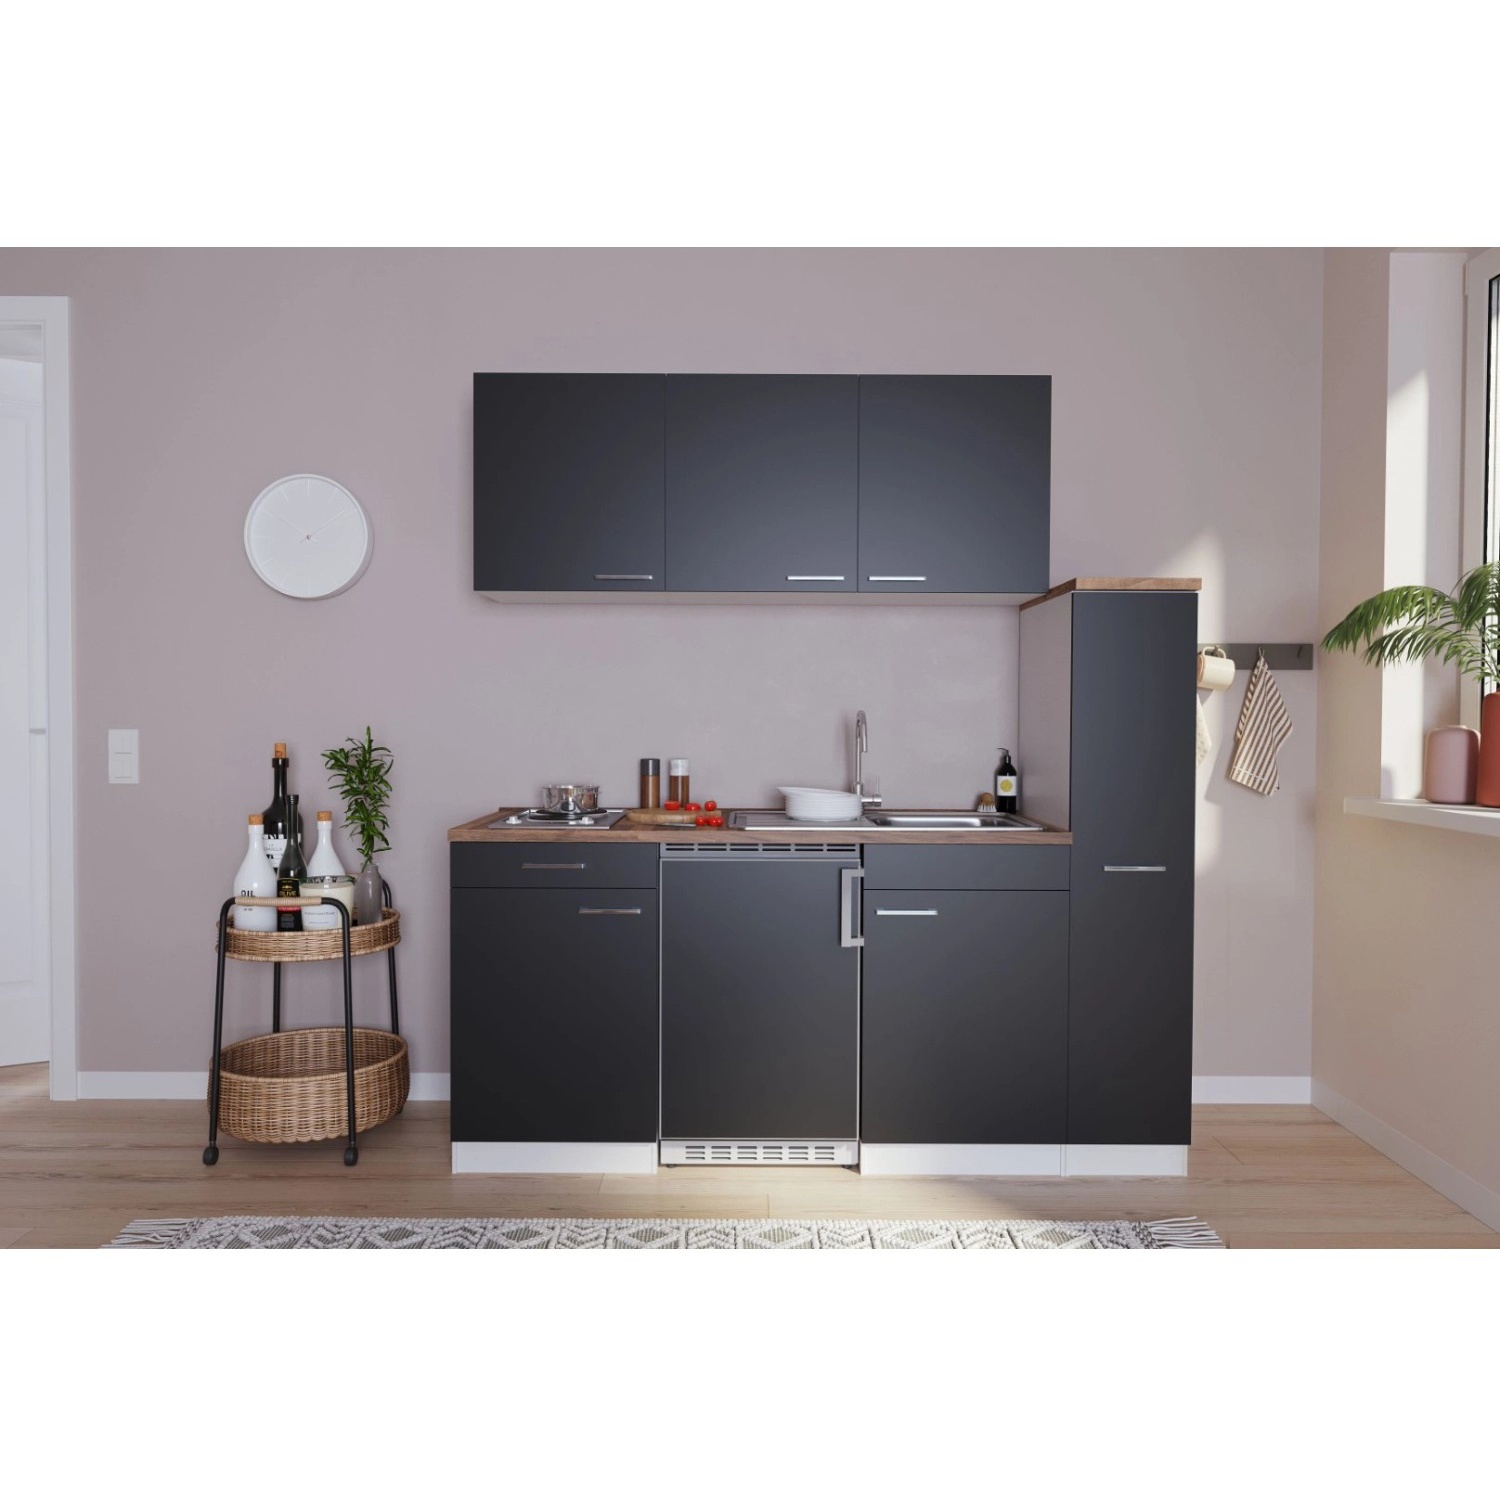 Bild von Küchenzeile Luis E-Geräte 180 cm mit Edelstahlkochmulde schwarz/weiß